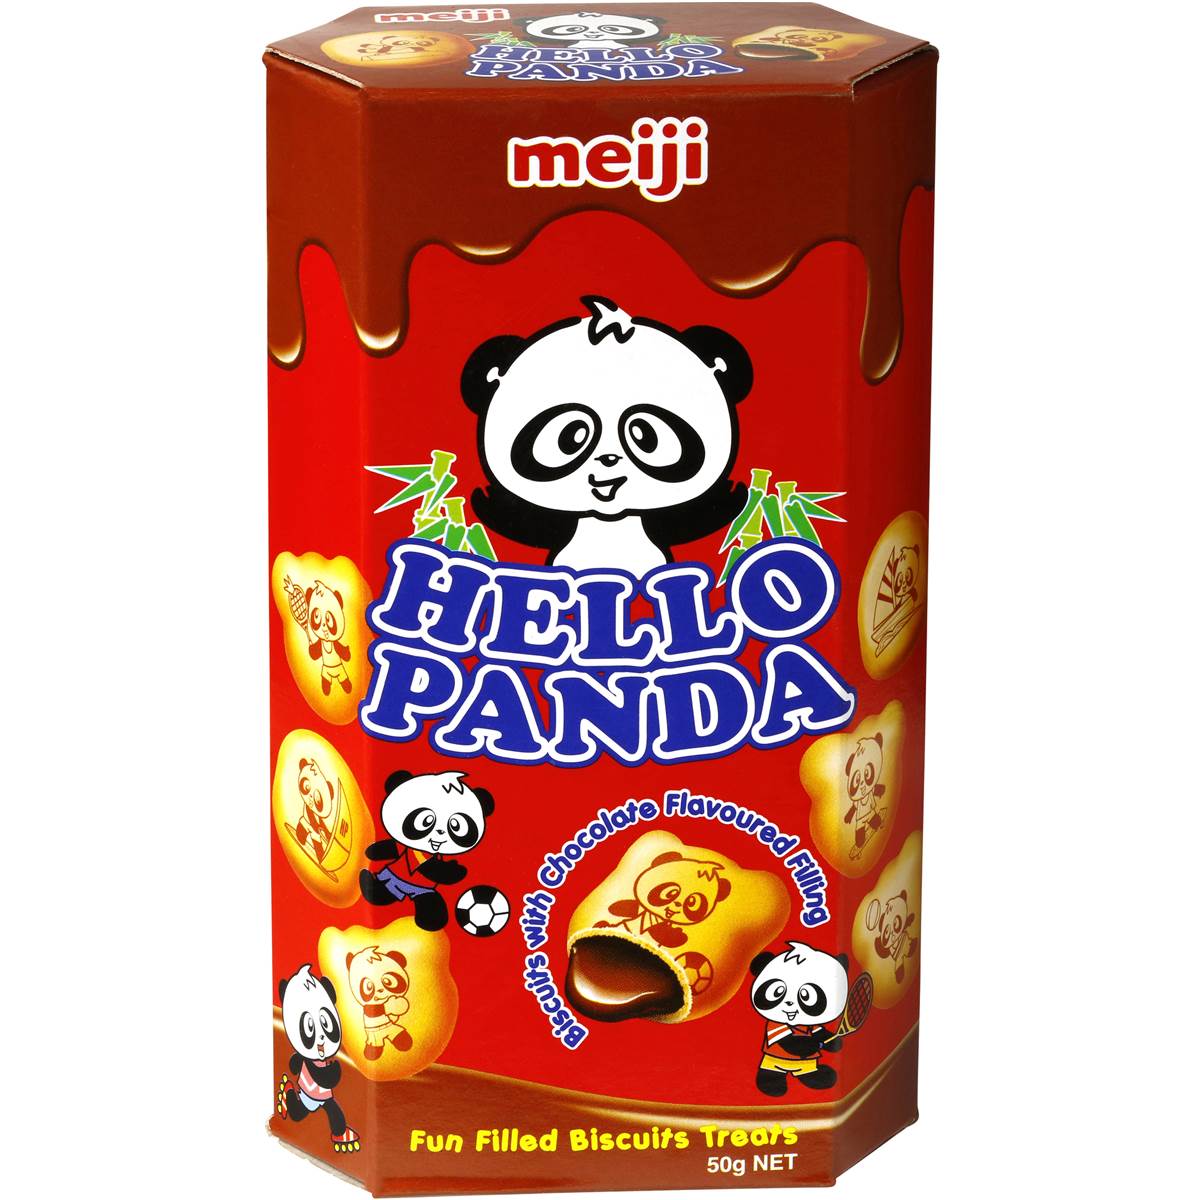 Hello Panda Chocolate - 57g